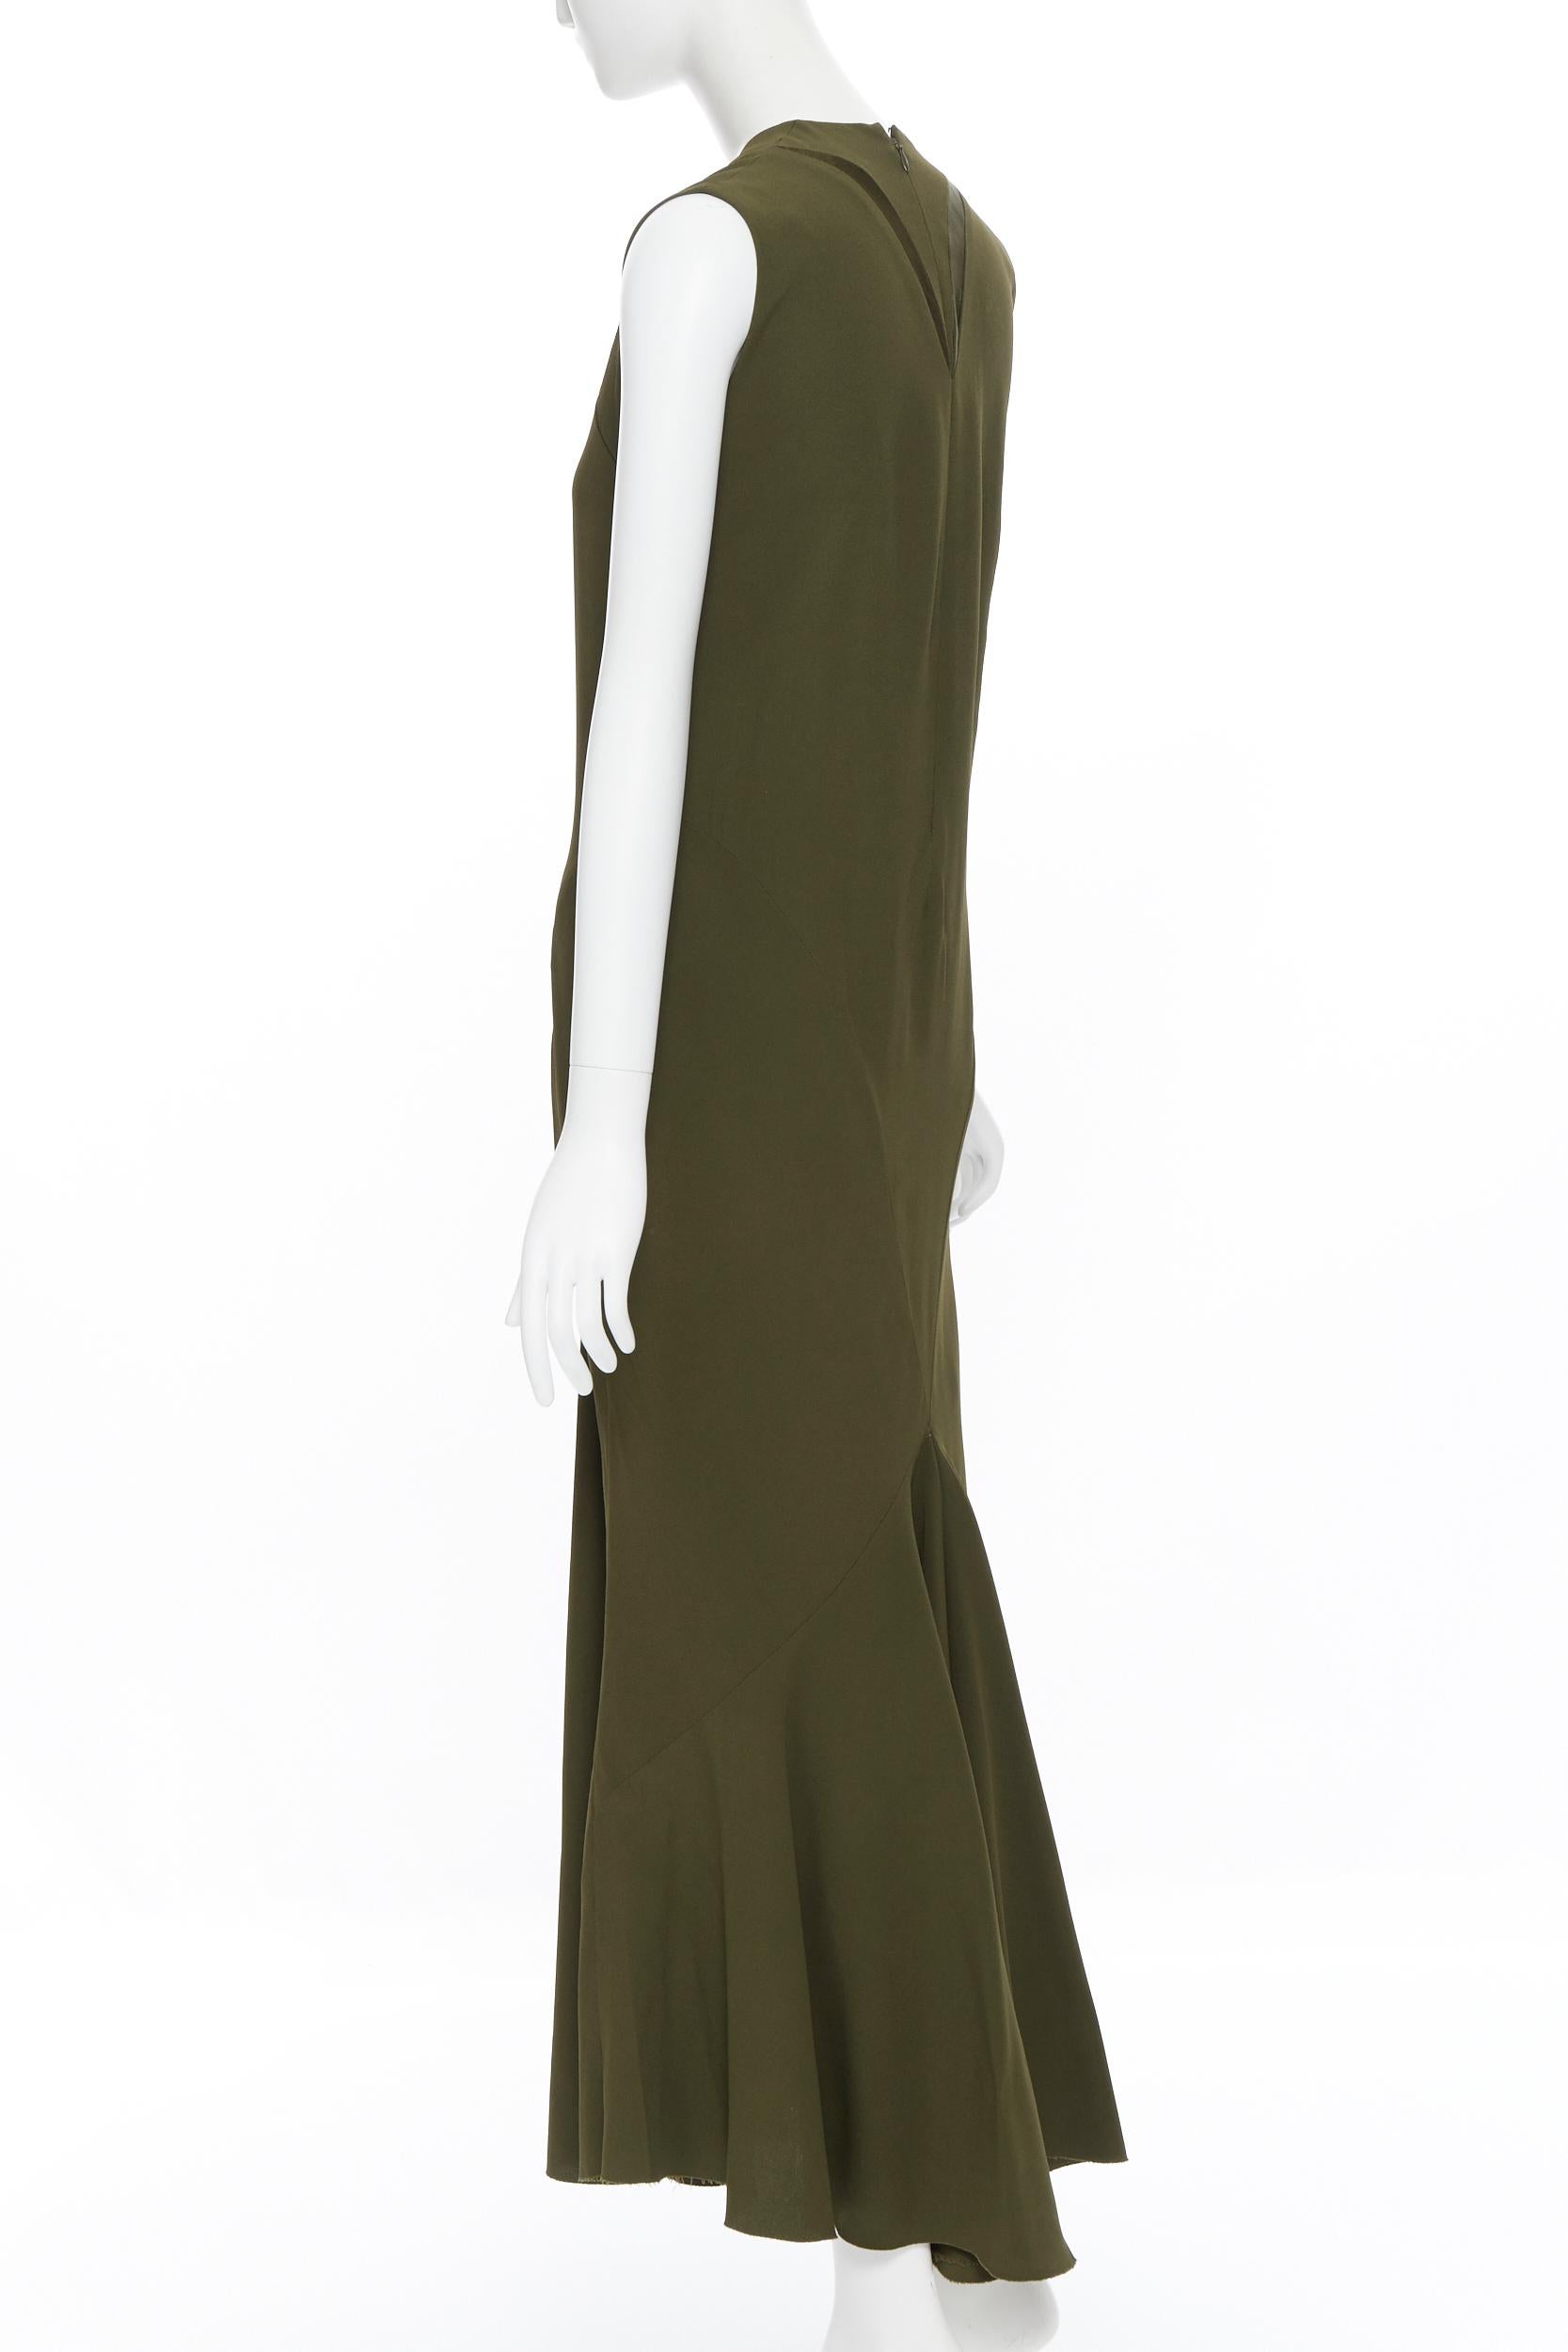 HAIDER ACKERMANN khaki green curved seam insert bias cut dress FR36 XS 1